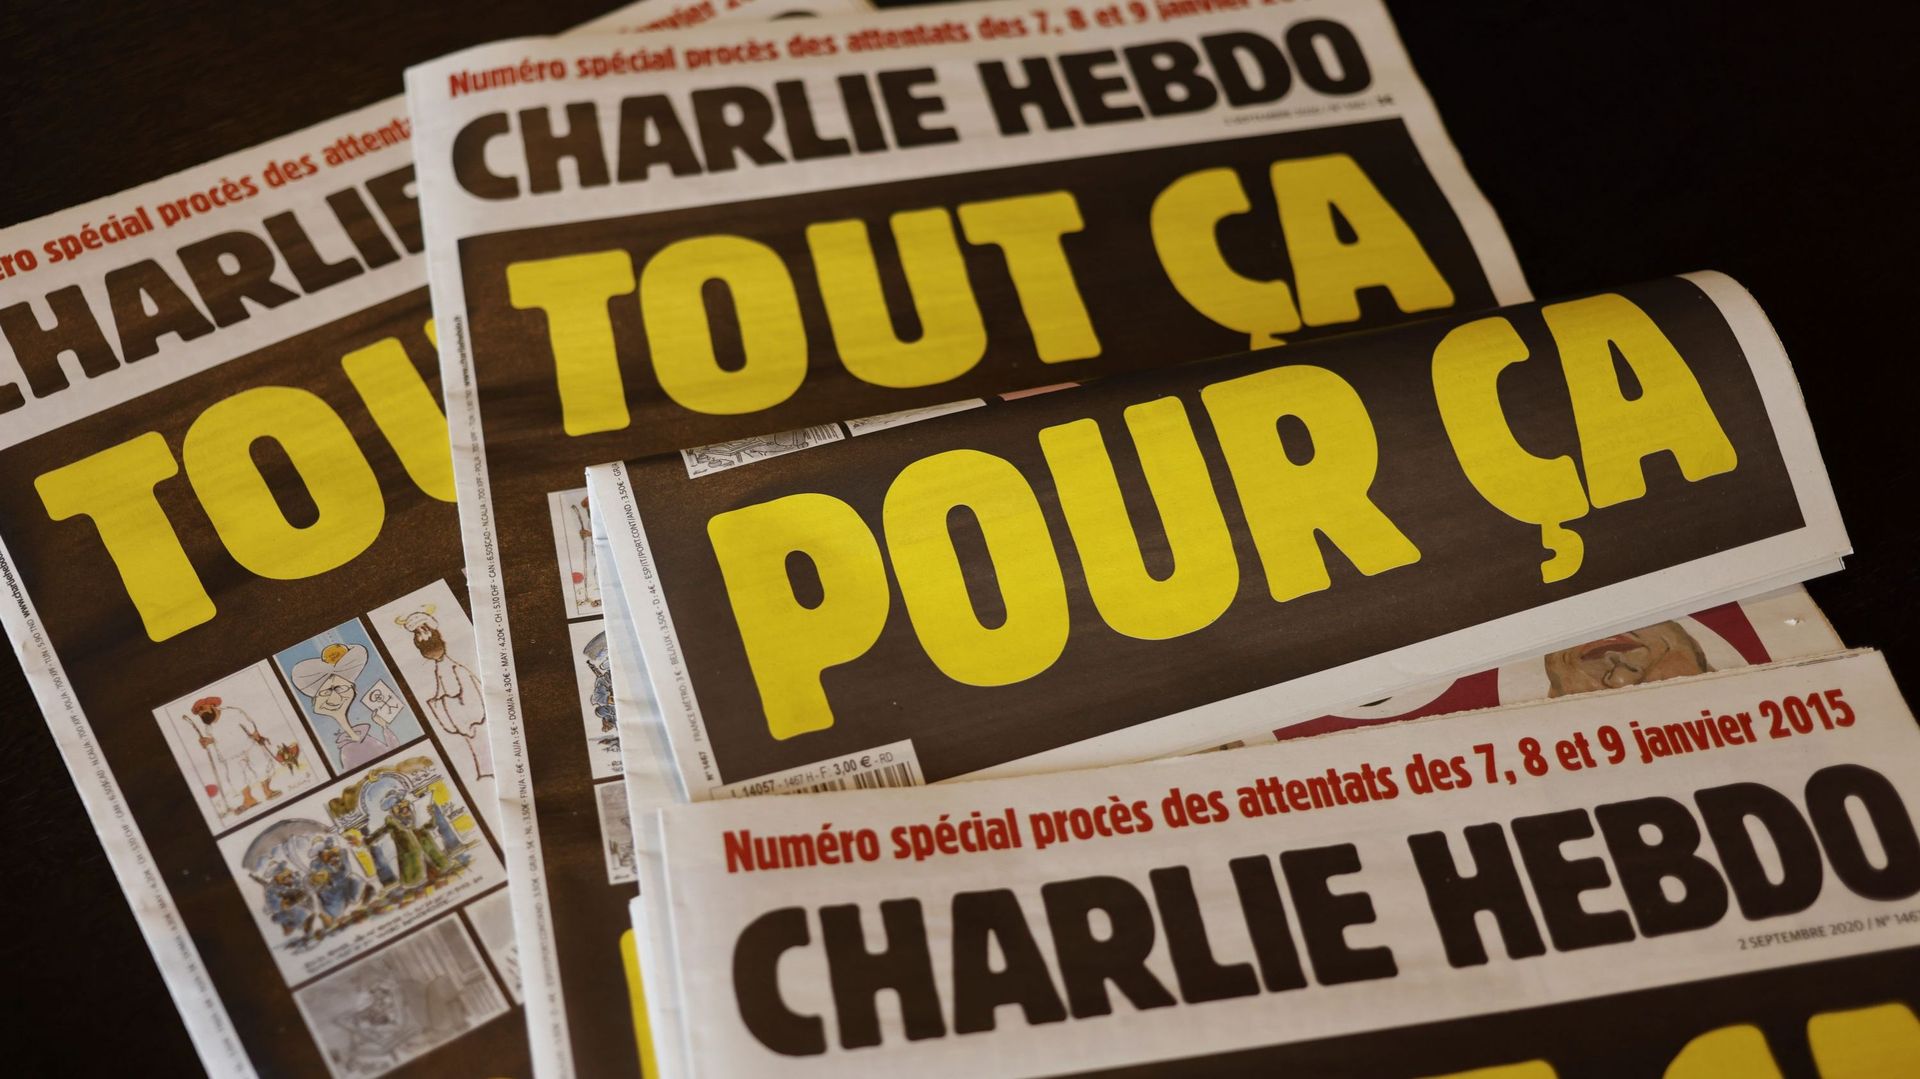 Une centaine de médias publient mercredi en France une lettre ouverte appelant à se mobiliser en faveur de la liberté d'expression en soutien à Charlie Hebdo.